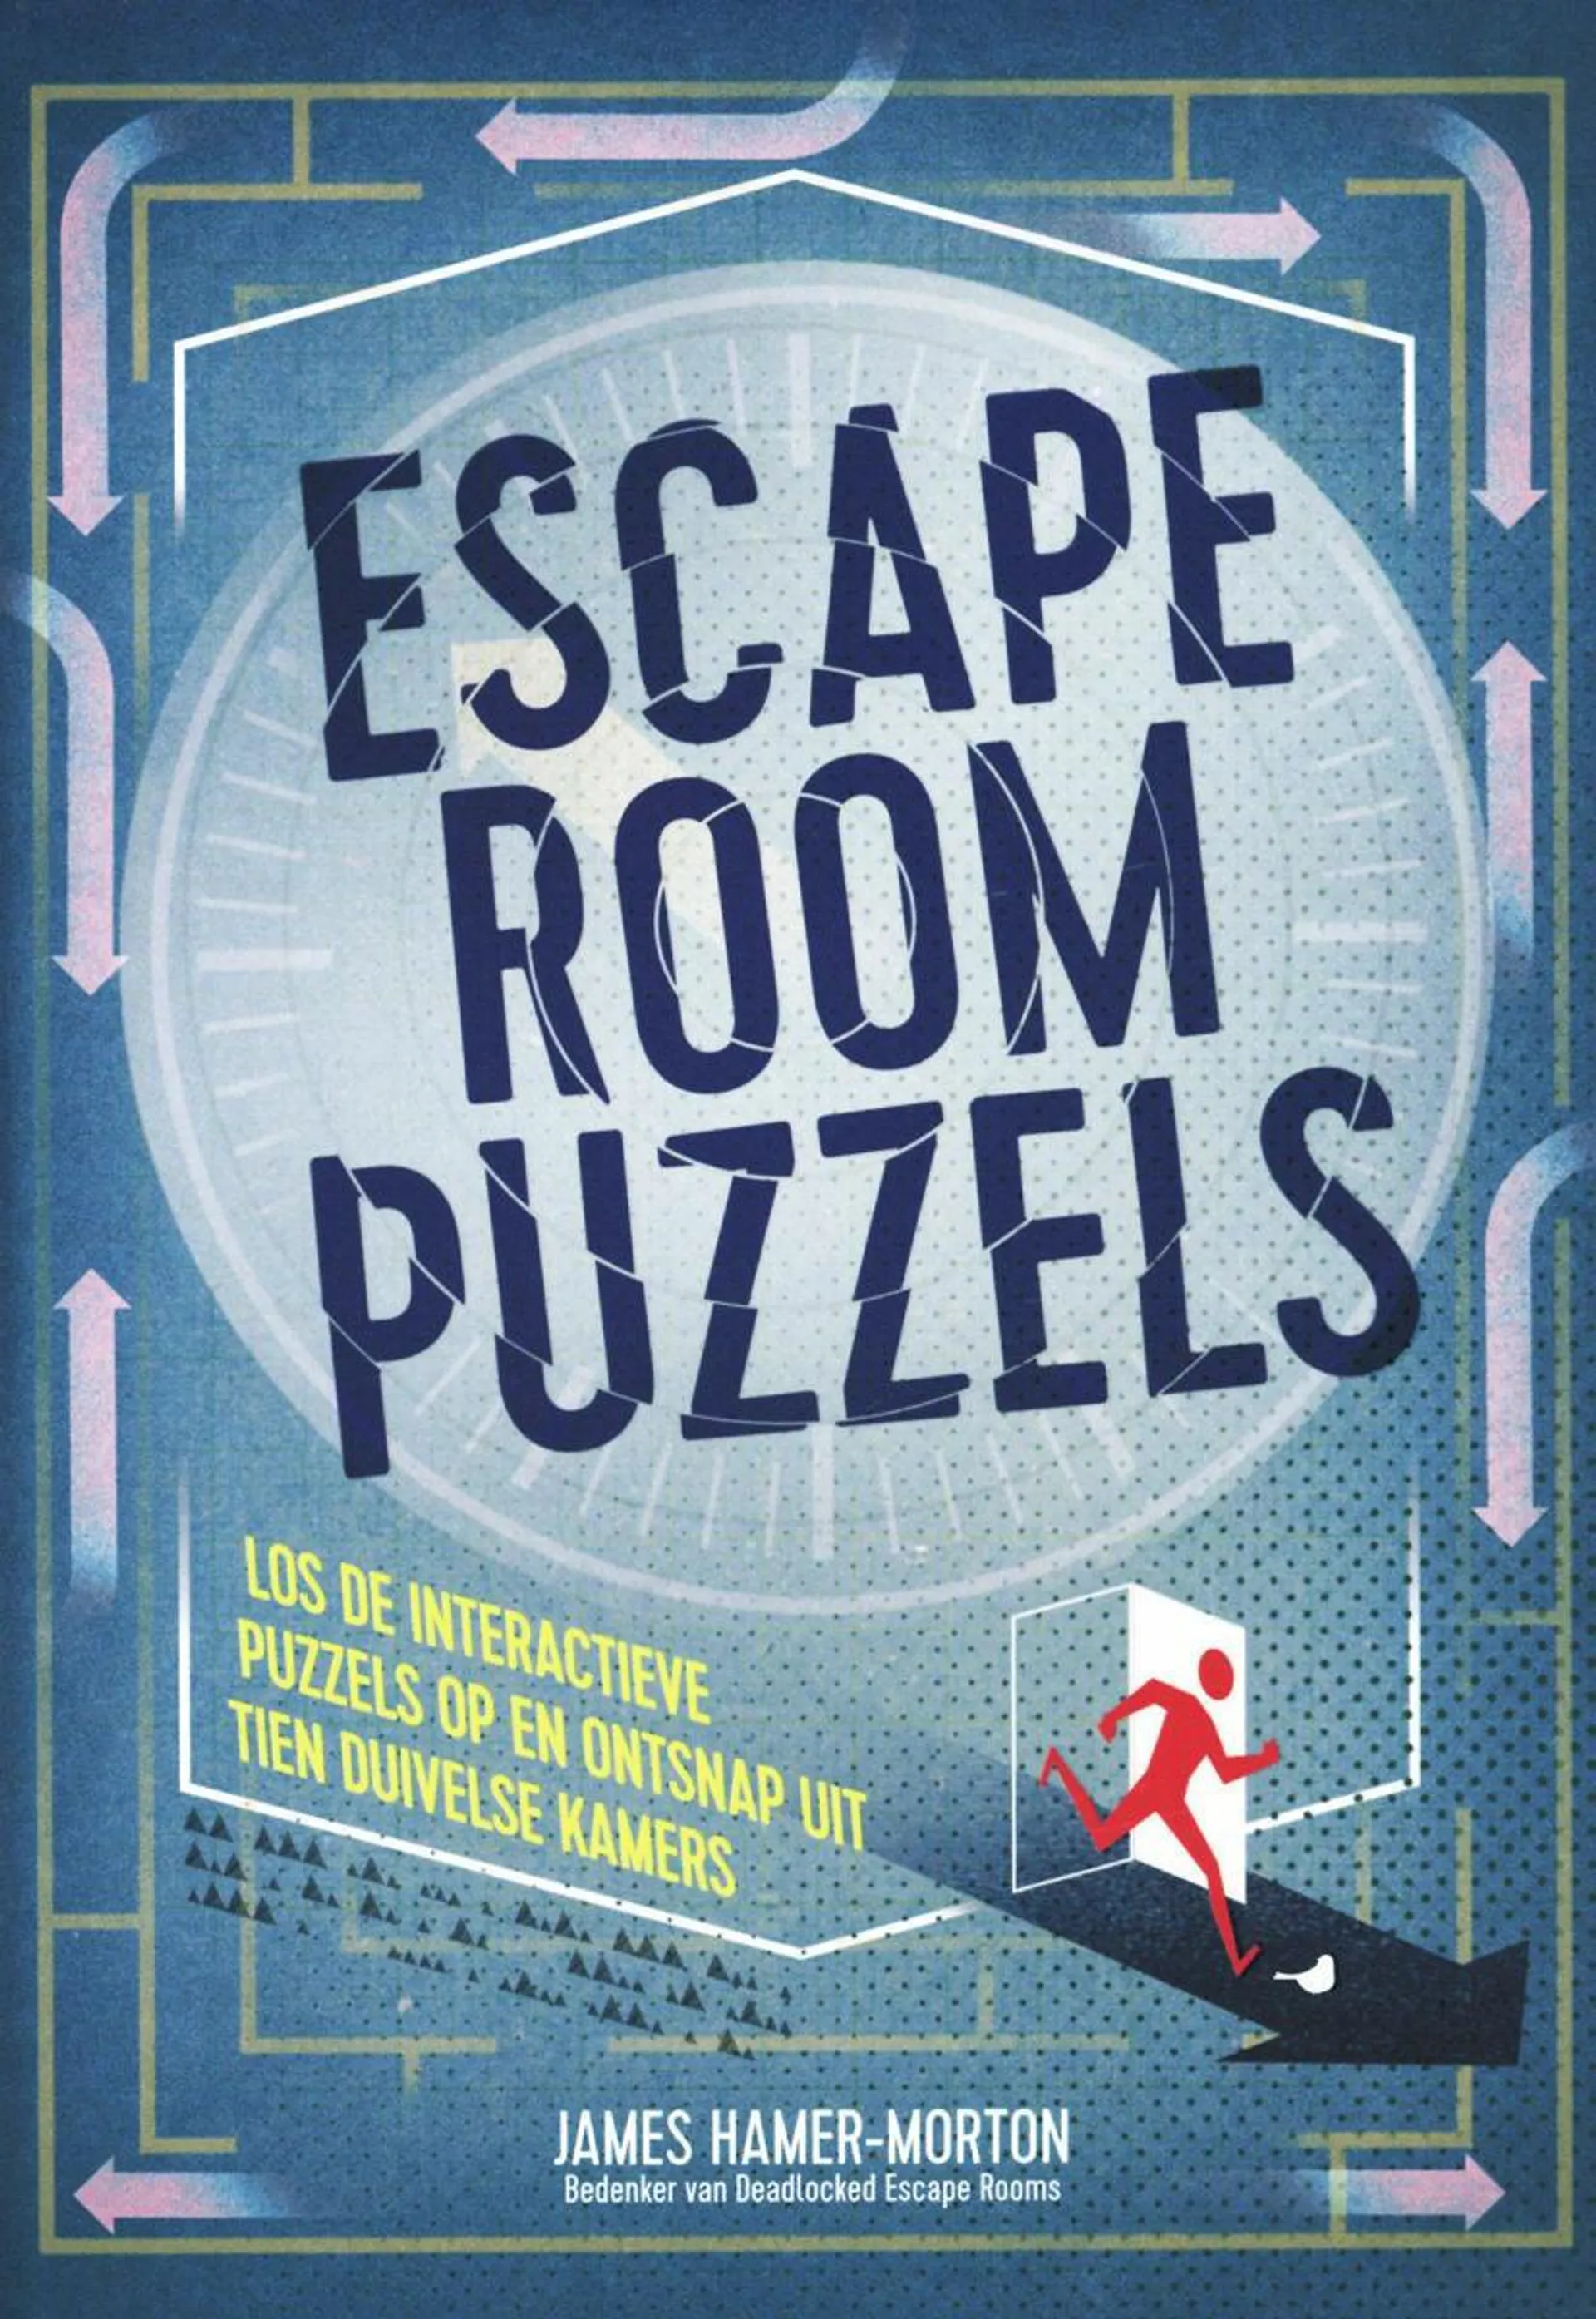 Escape Room Puzzels